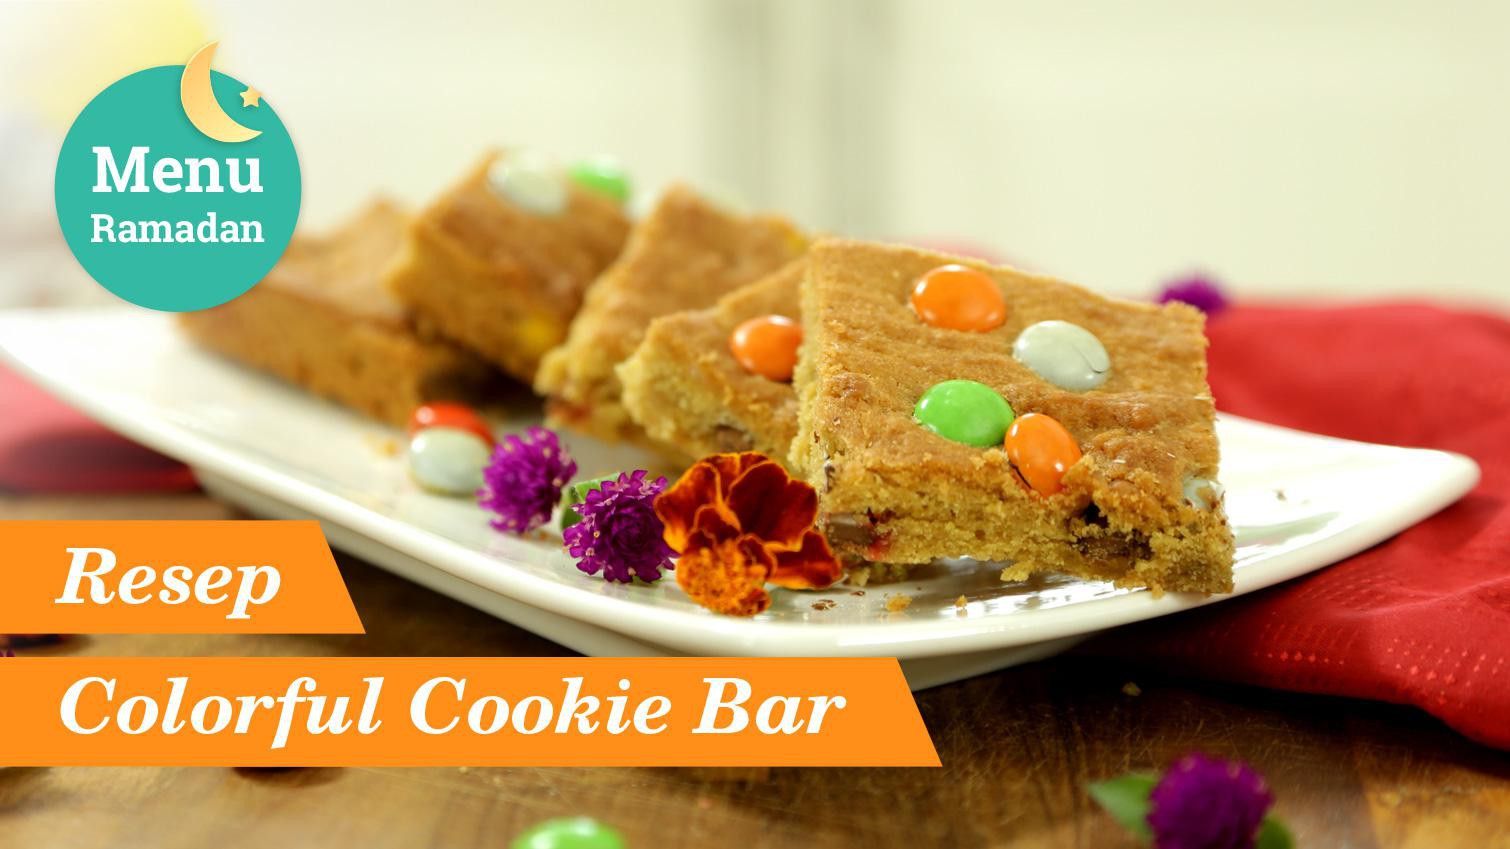 Resep Colorful Cookie Bar, Kue Kering Kekinian Untuk Sajian Lebaran